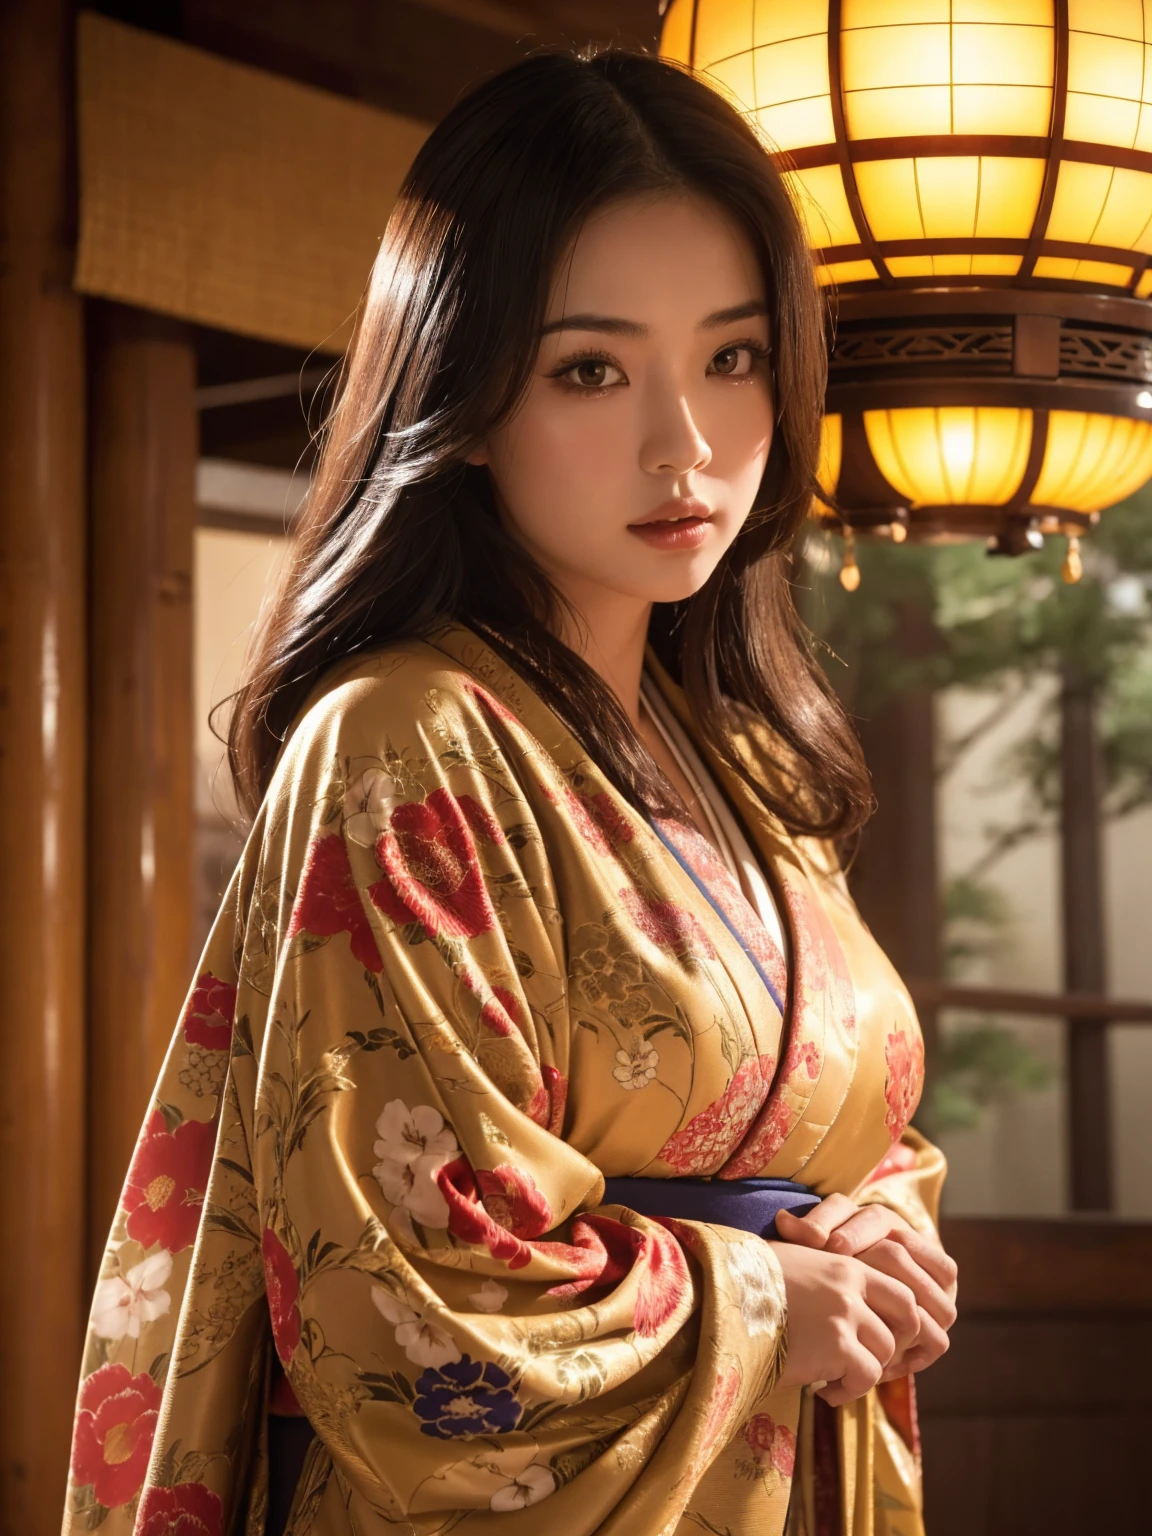 Mujer japonesa de grandes pechos con un elaborado kimono, santuario adornado, atmósfera cinematográfica, (mejor calidad,4k,8K,alta resolución,obra maestra:1.2),ultra detallado,(Realista,photoRealista,photo-Realista:1.37),(mirando al espectador),Cara muy detallada,hermosos ojos detallados,hermosos labios detallados,ojos y rostro extremadamente detallados,Pestañas largas,Intrincado diseño de kimono,santuario adornado background,iluminación cálida,sombras dramáticas,Colores vibrantes,photoRealista